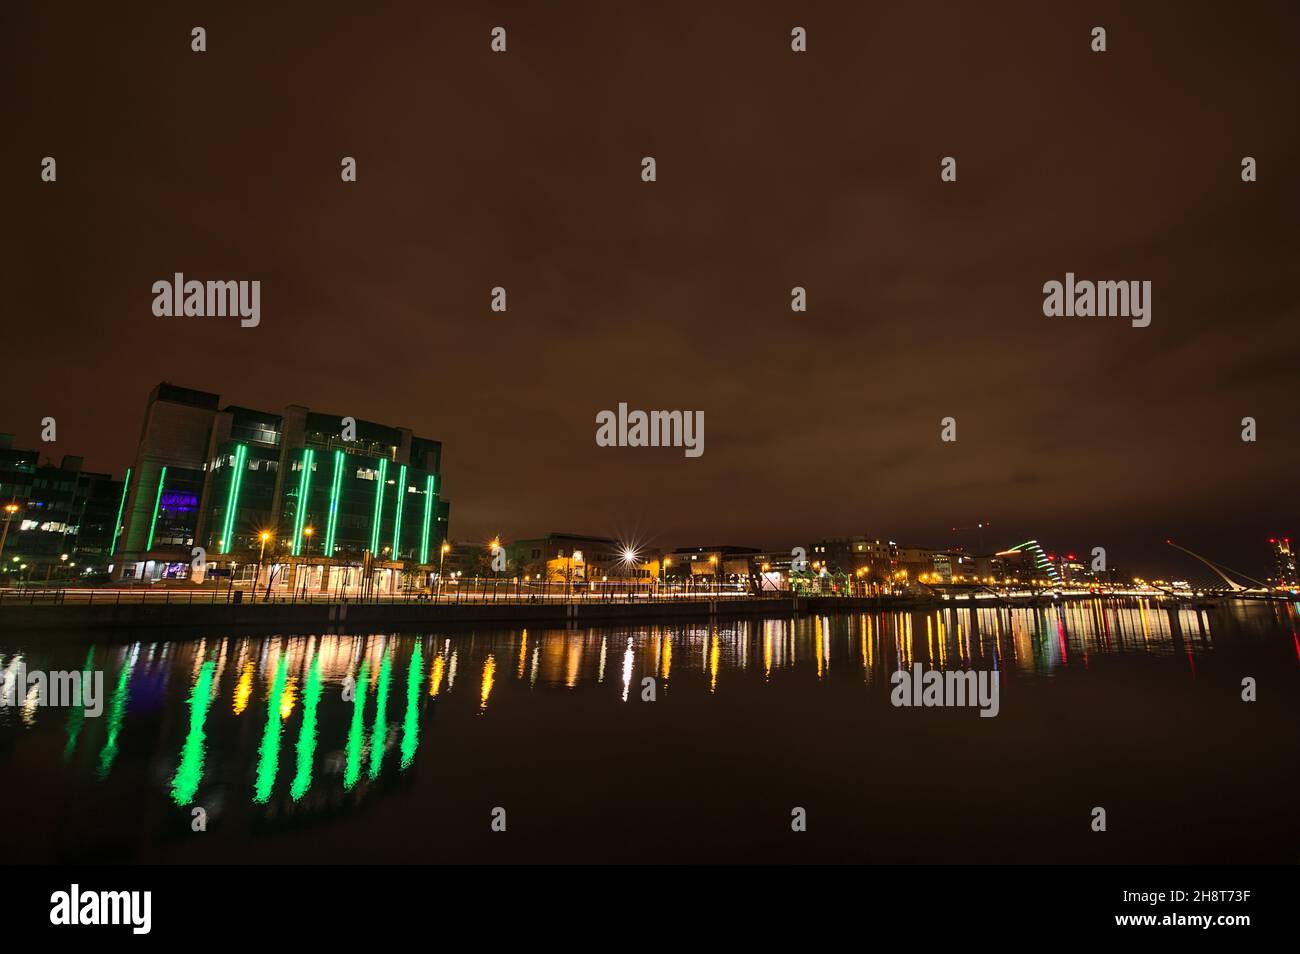 Belle vue en soirée grand angle sur la rivière Liffey avec bâtiments et monuments et réflexion de lumière dans l'eau, Dublin, Irlande Banque D'Images